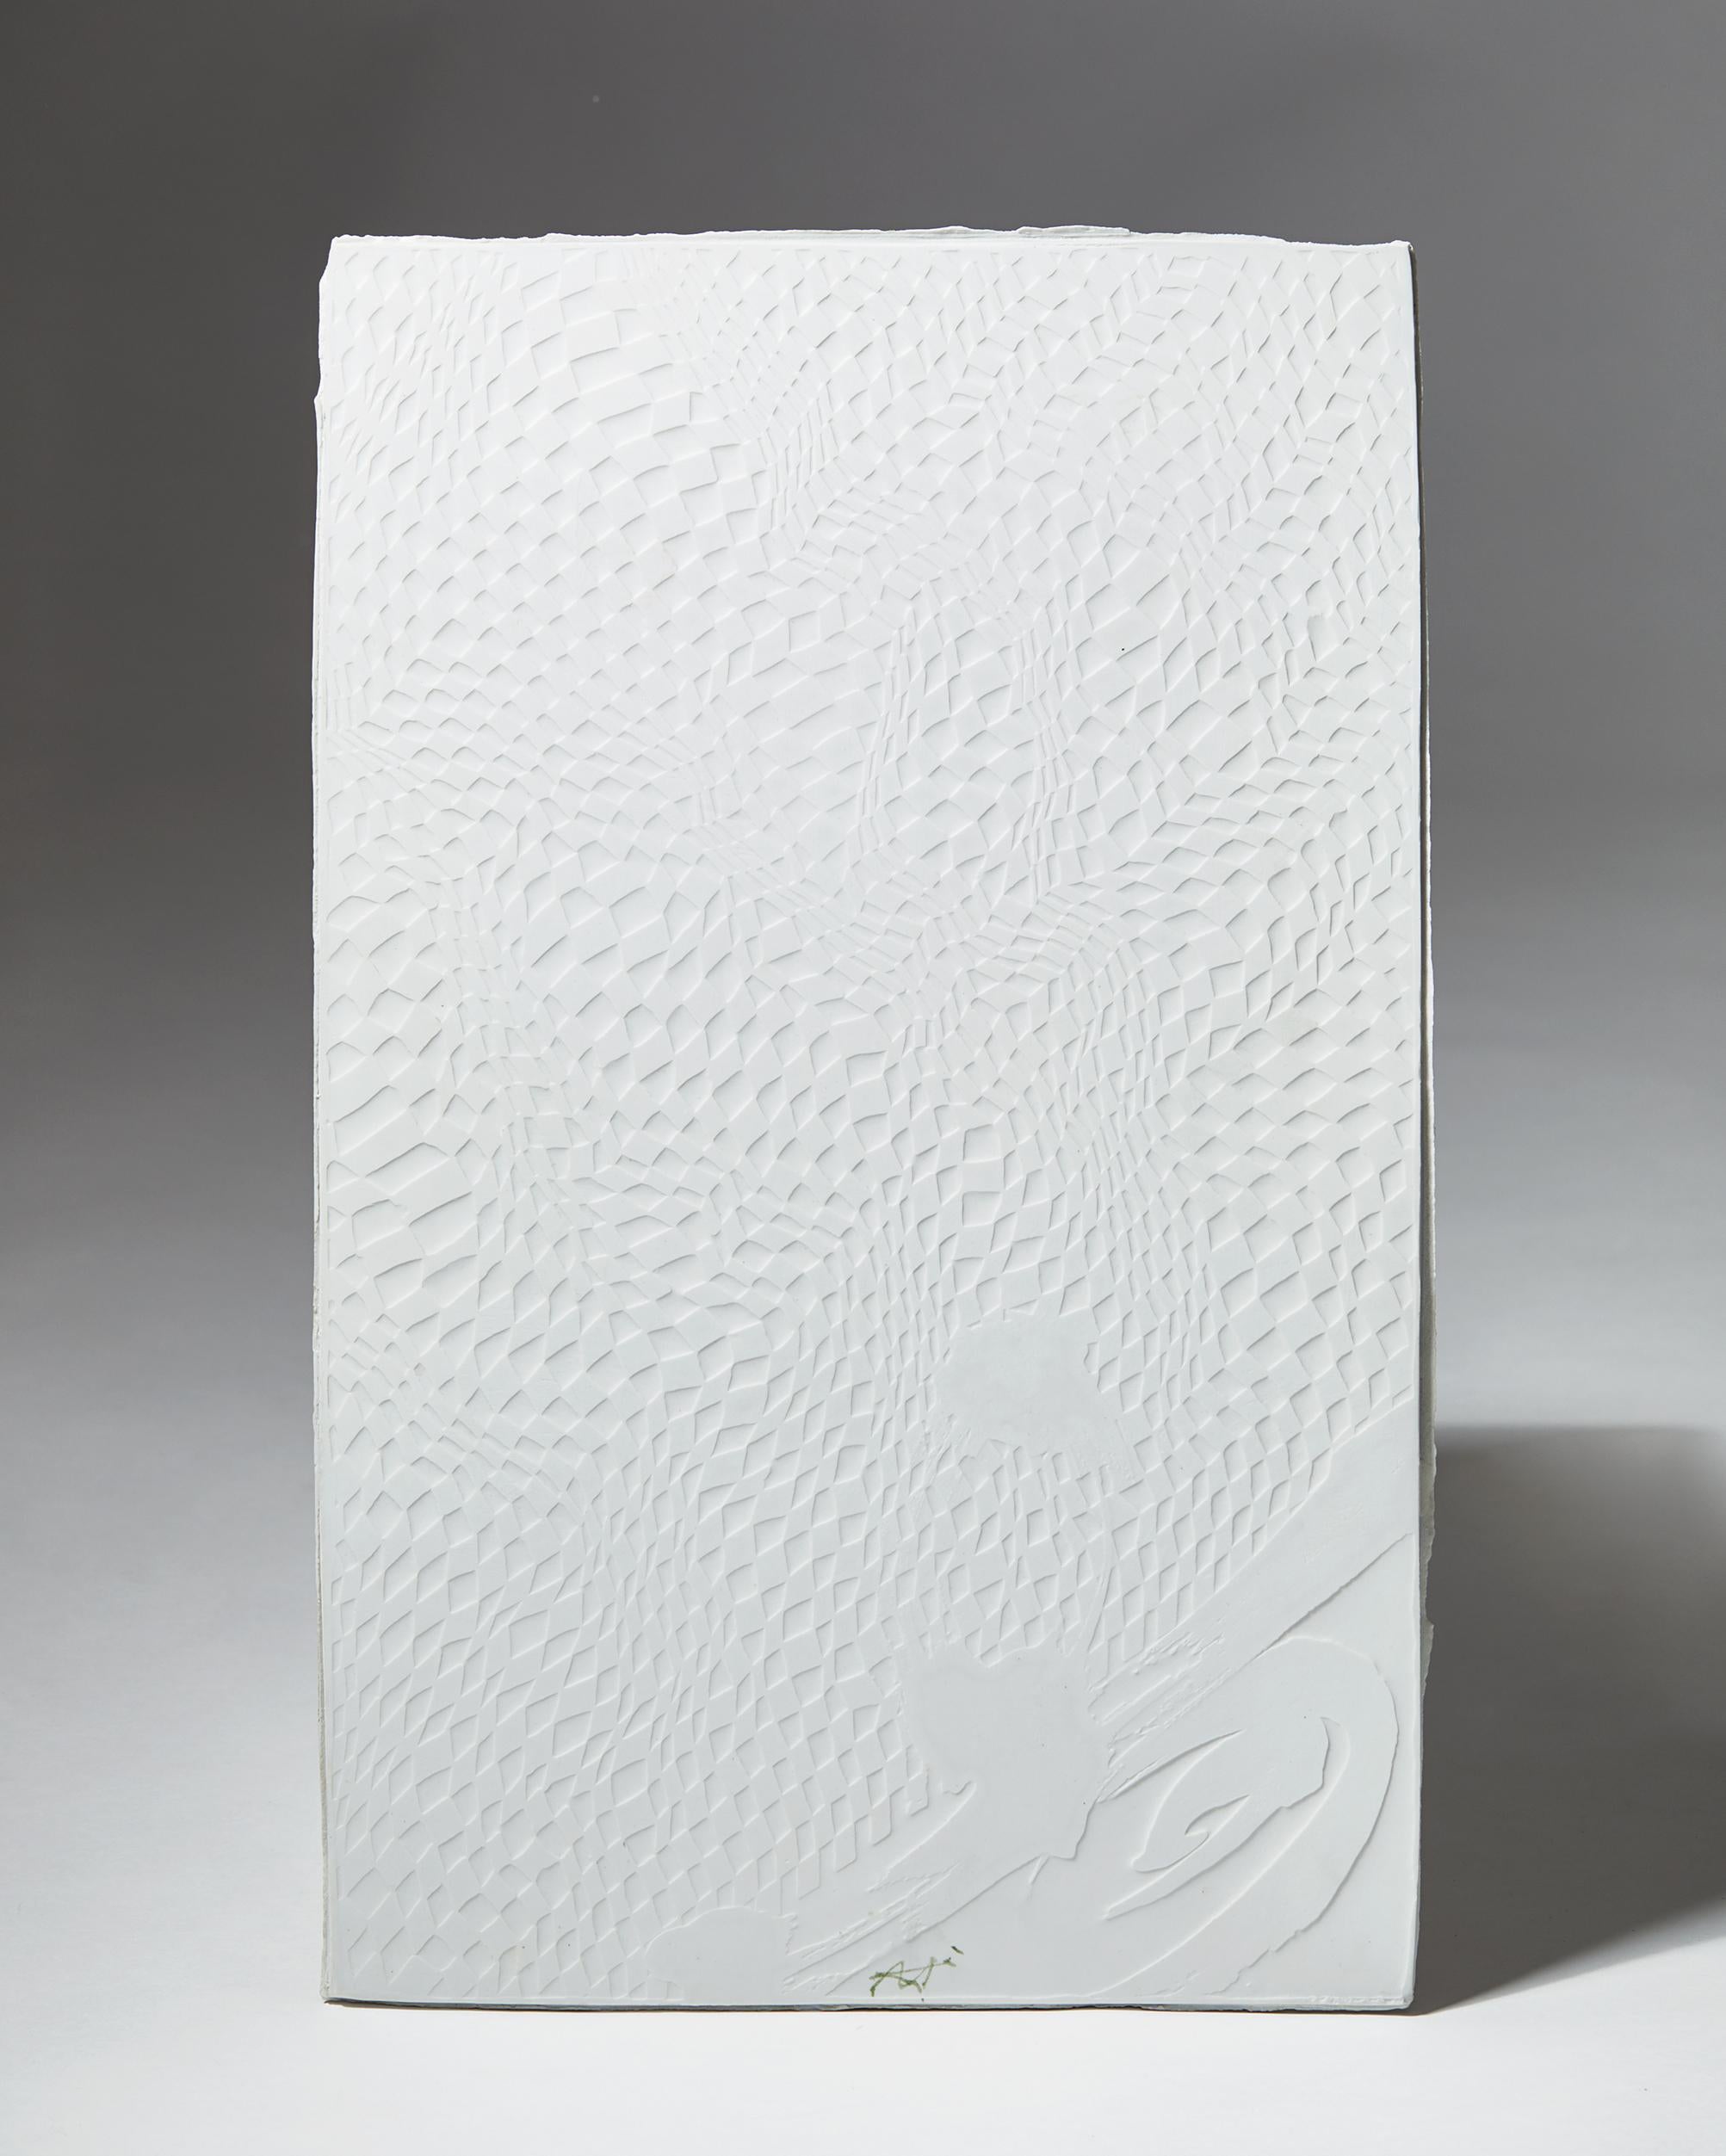 Porcelain. 

Measures: H 59 cm / 23 1/8